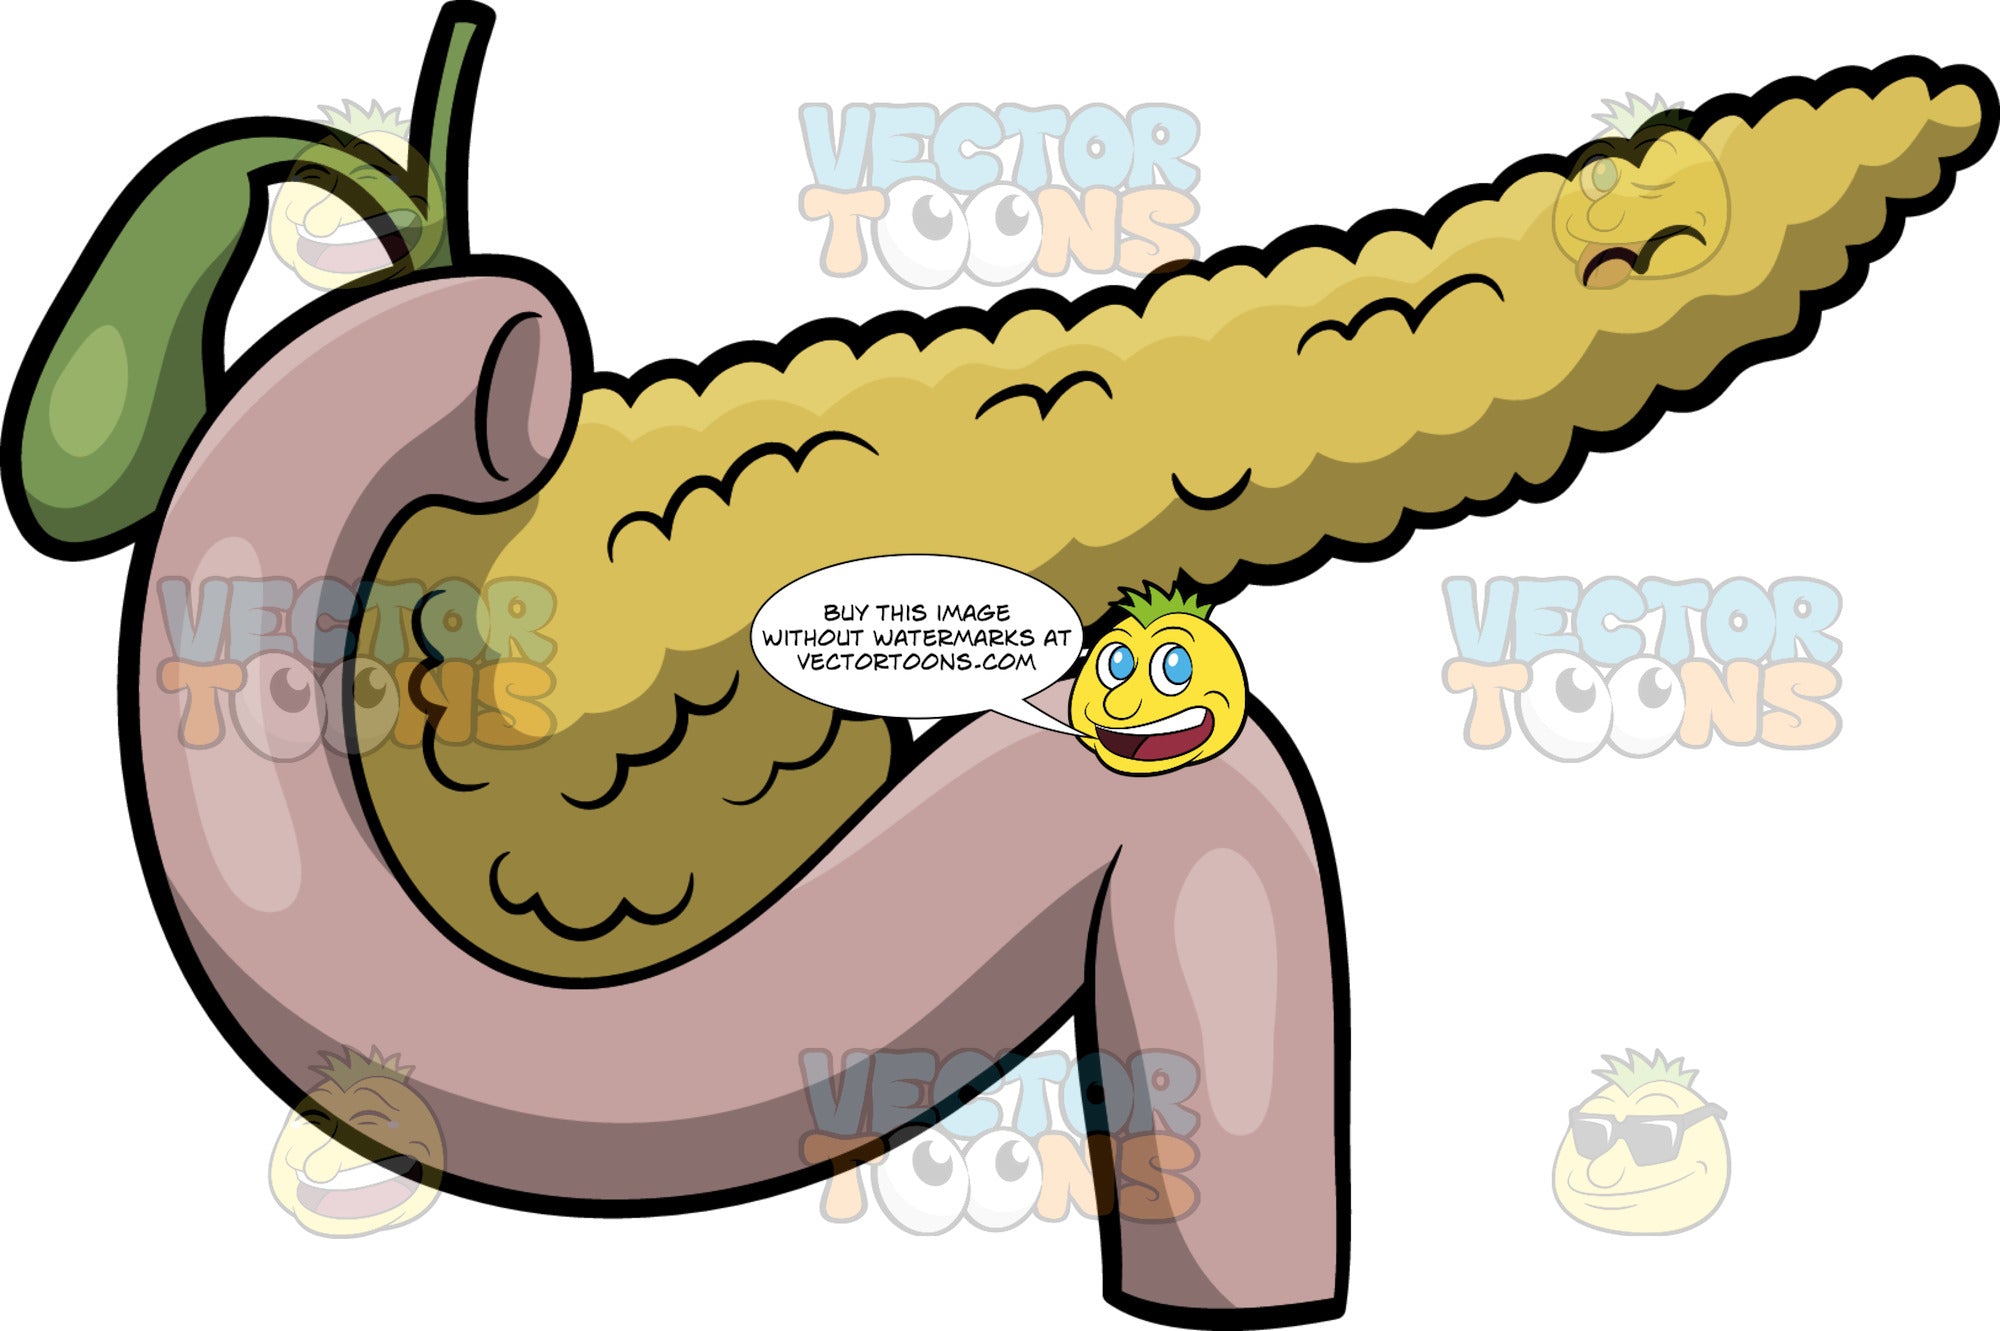 Cartoon: A Human Pancreas | Clipart Images